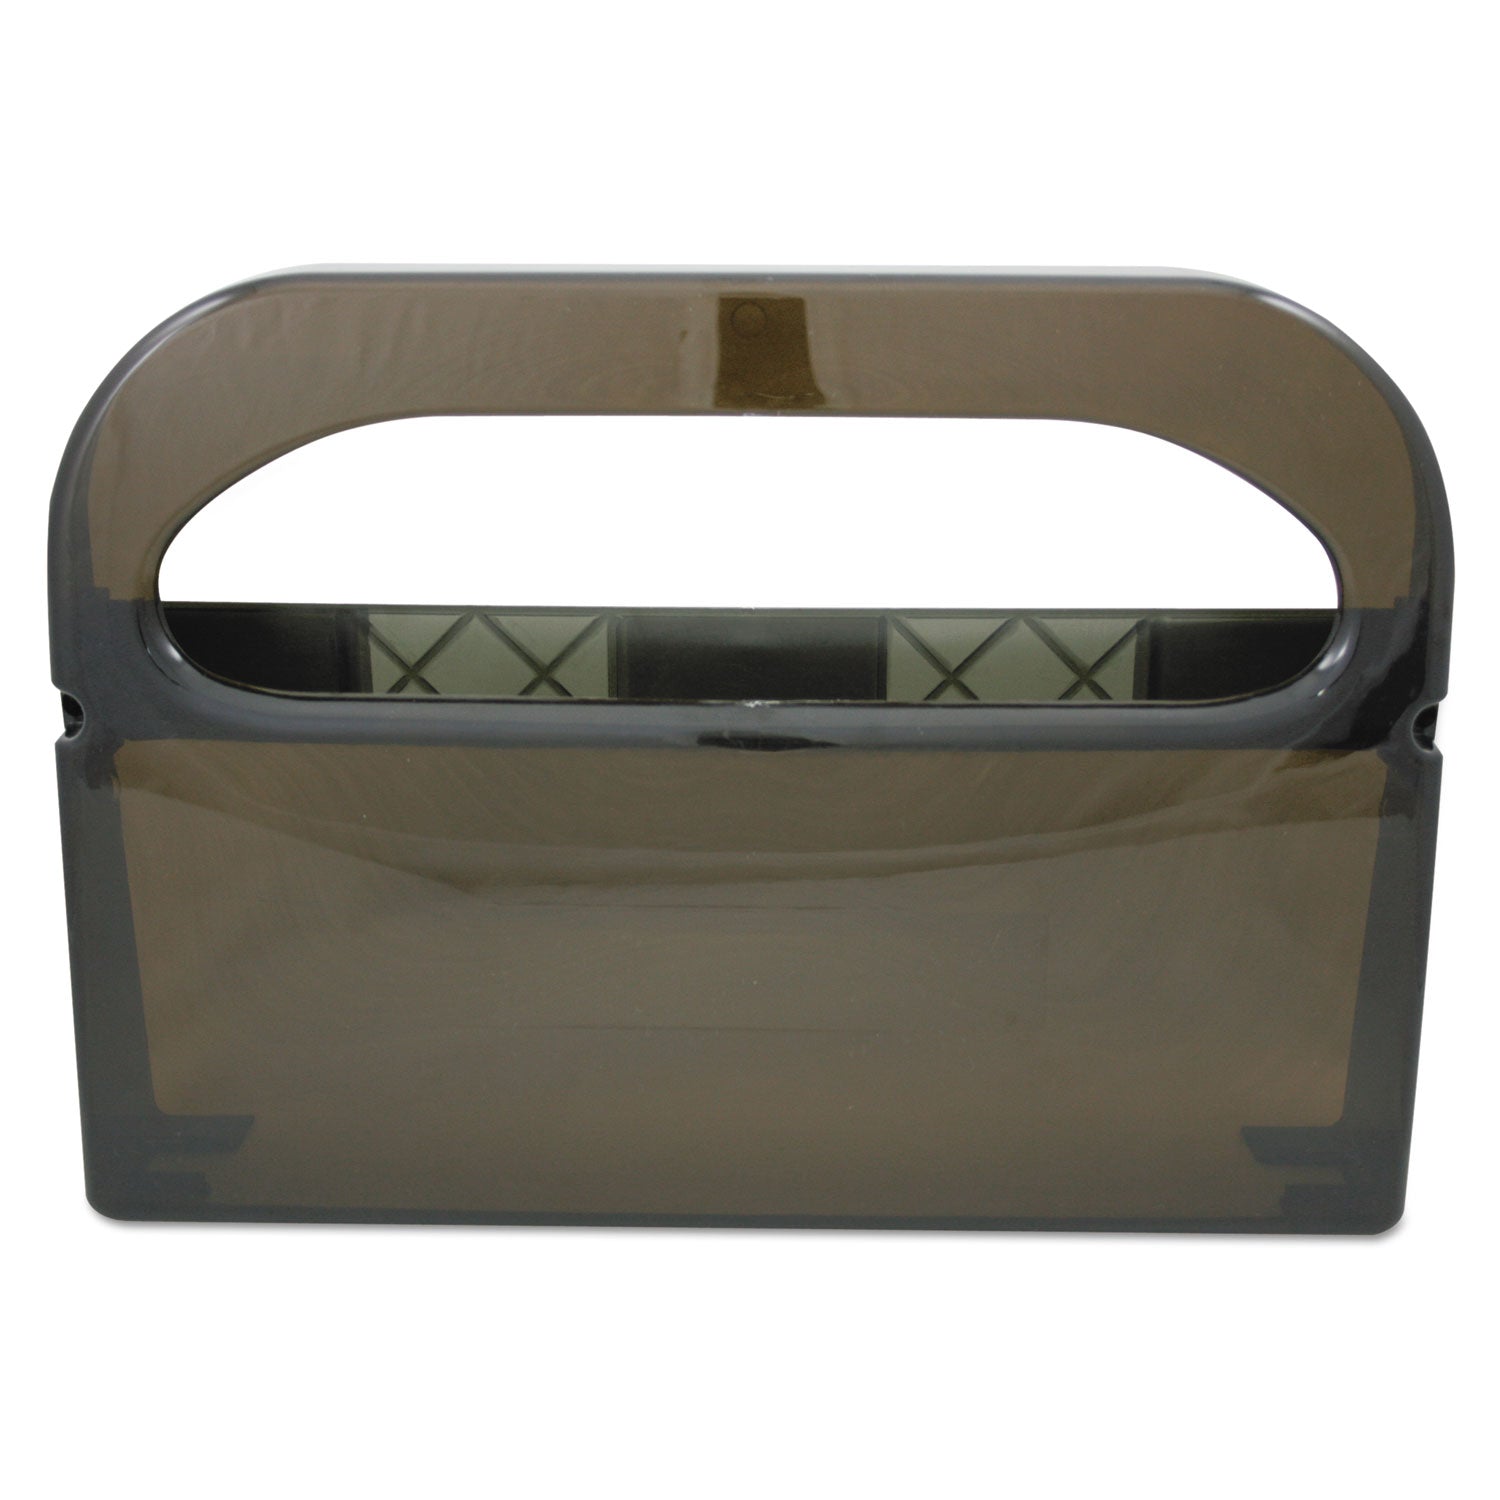 health-gards-toilet-seat-cover-dispenser-half-fold-16-x-325-x-115-smoke_hoshg12smo - 1